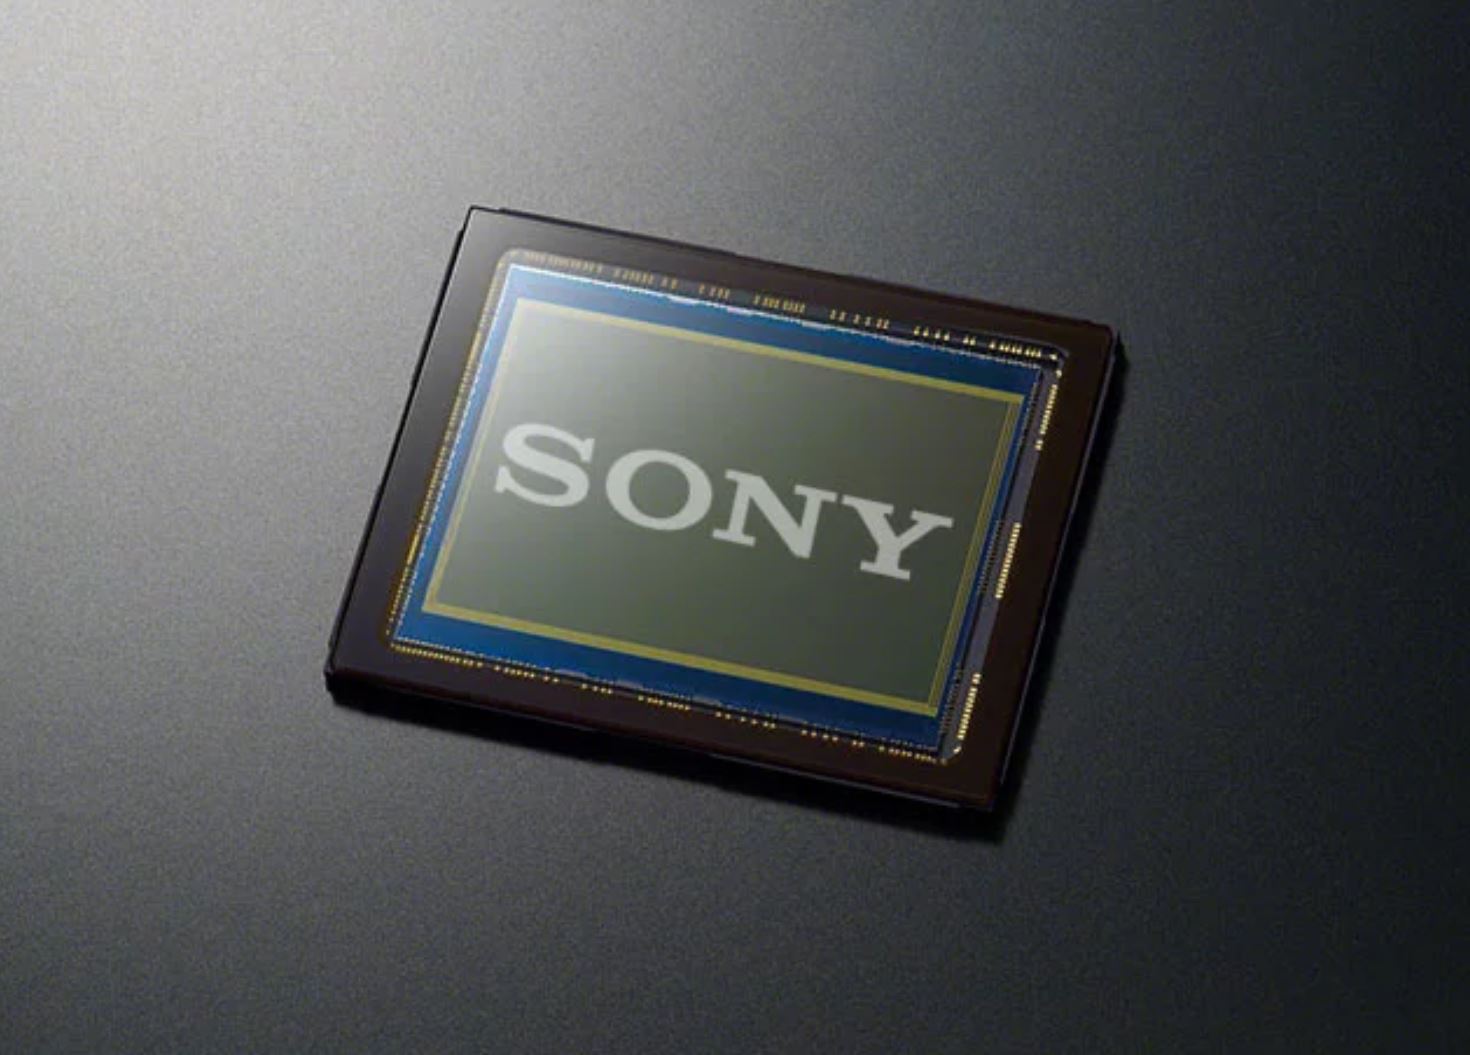 Cảm biến ảnh Sony 50MP với kích thước 1/1.1-inch sắp được ra mắt